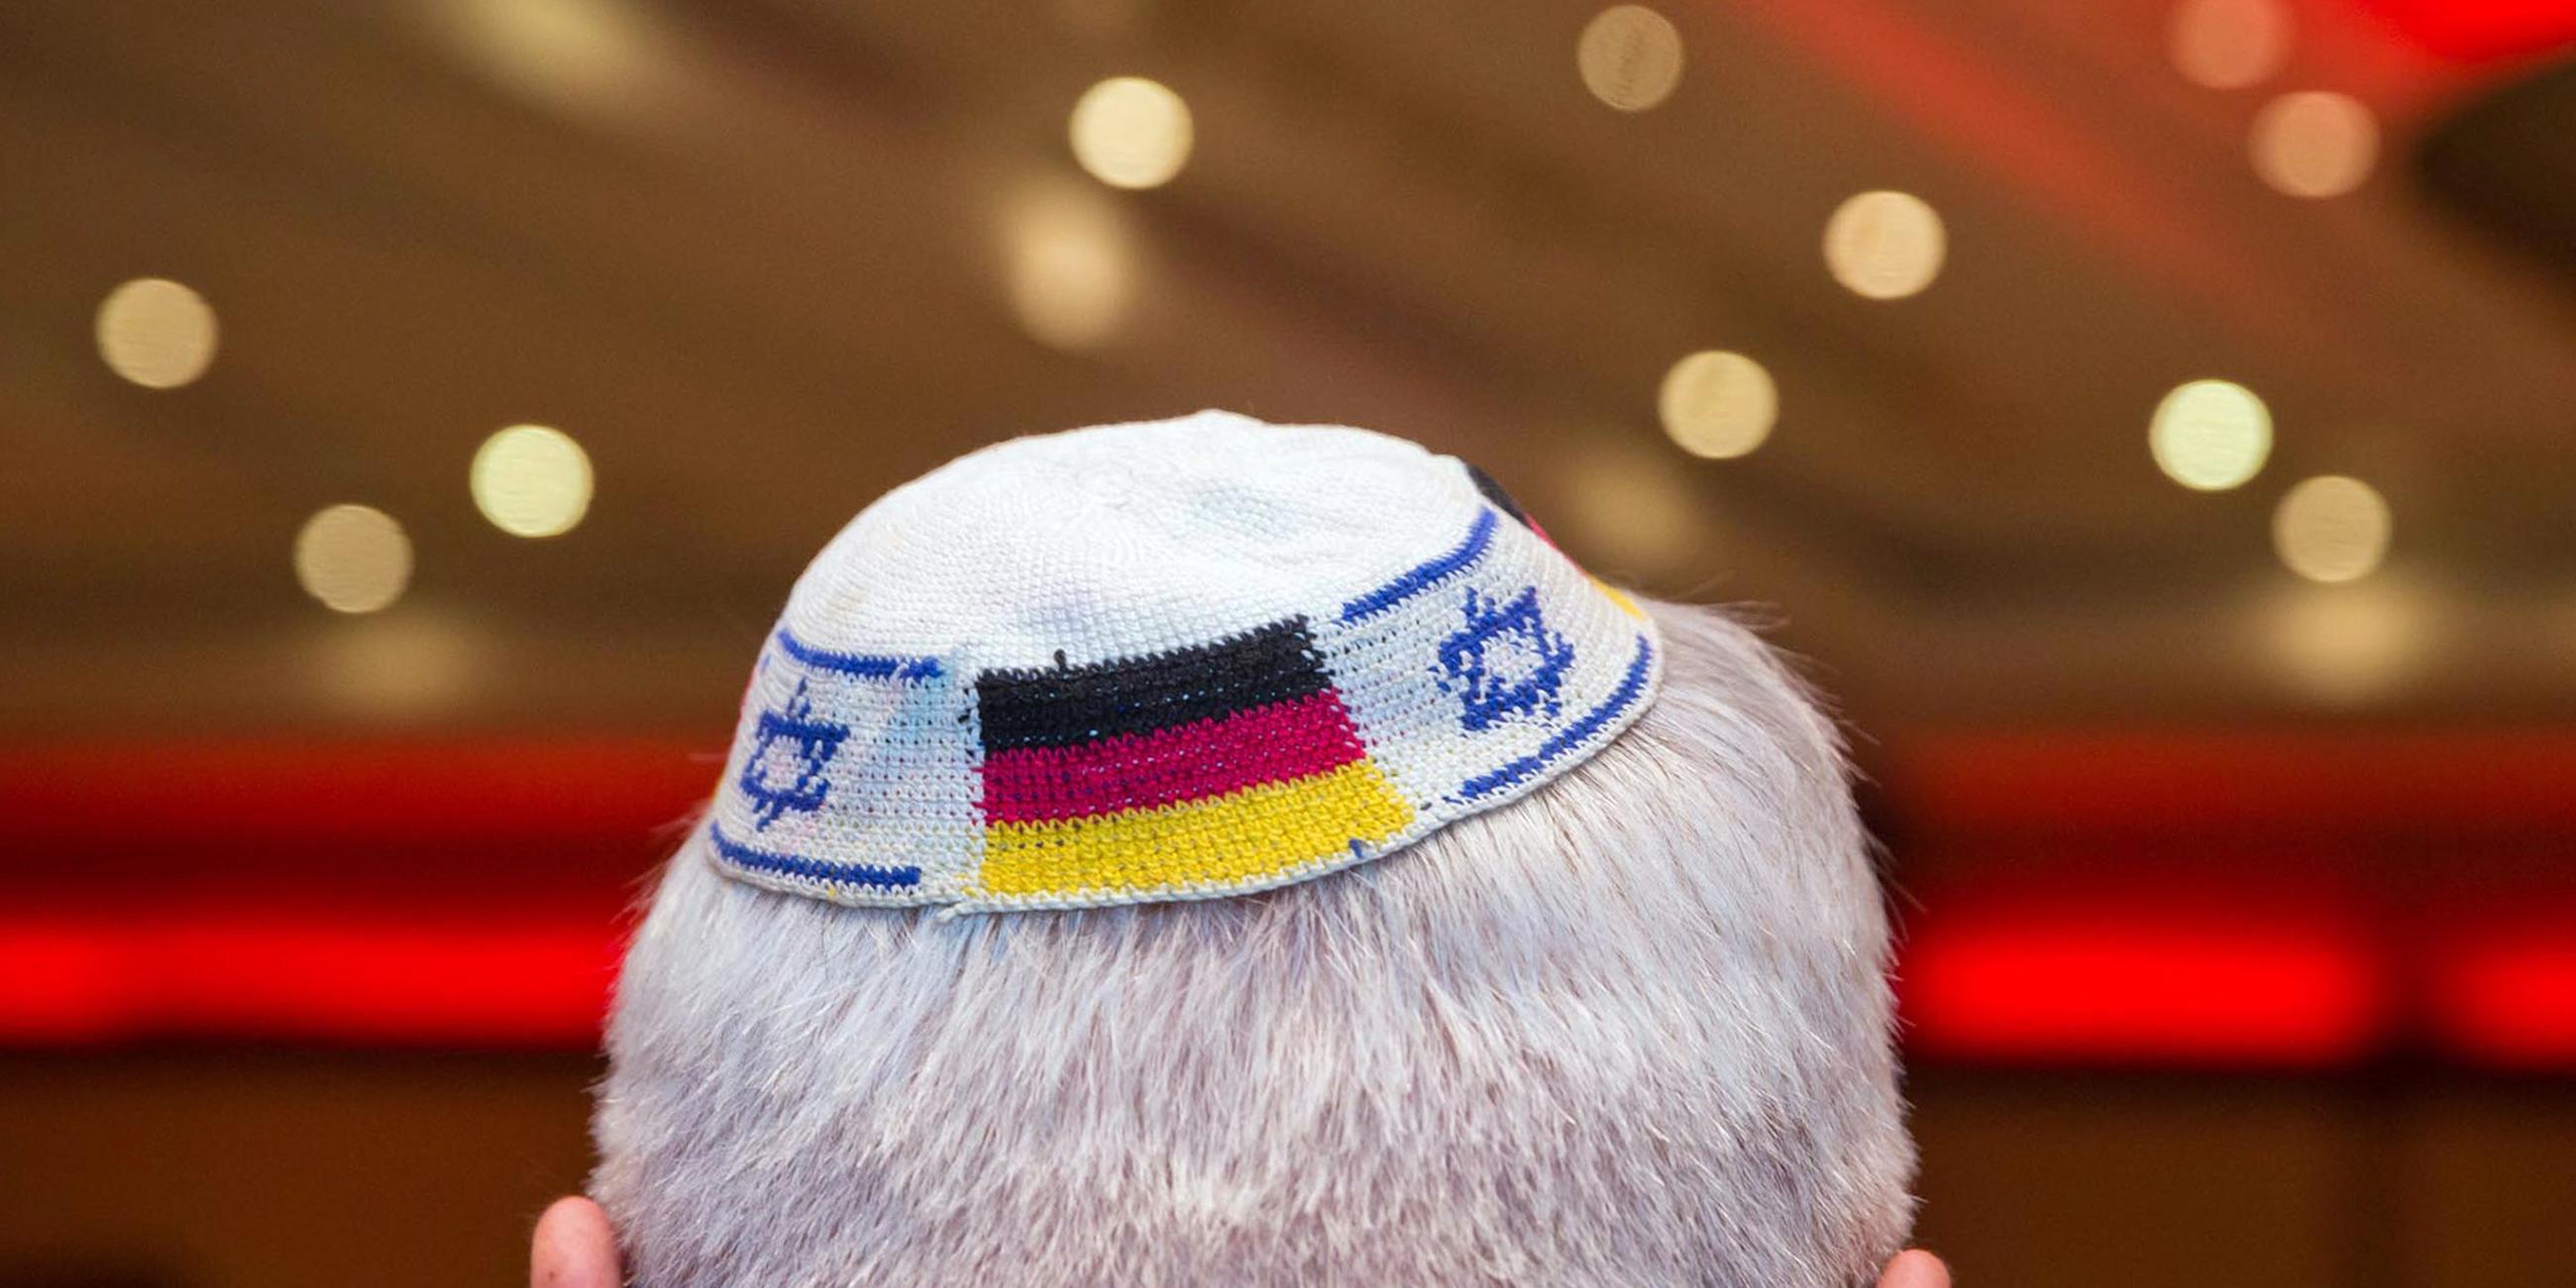 Juden gründen Vereinigung in der AfD. Archivbild